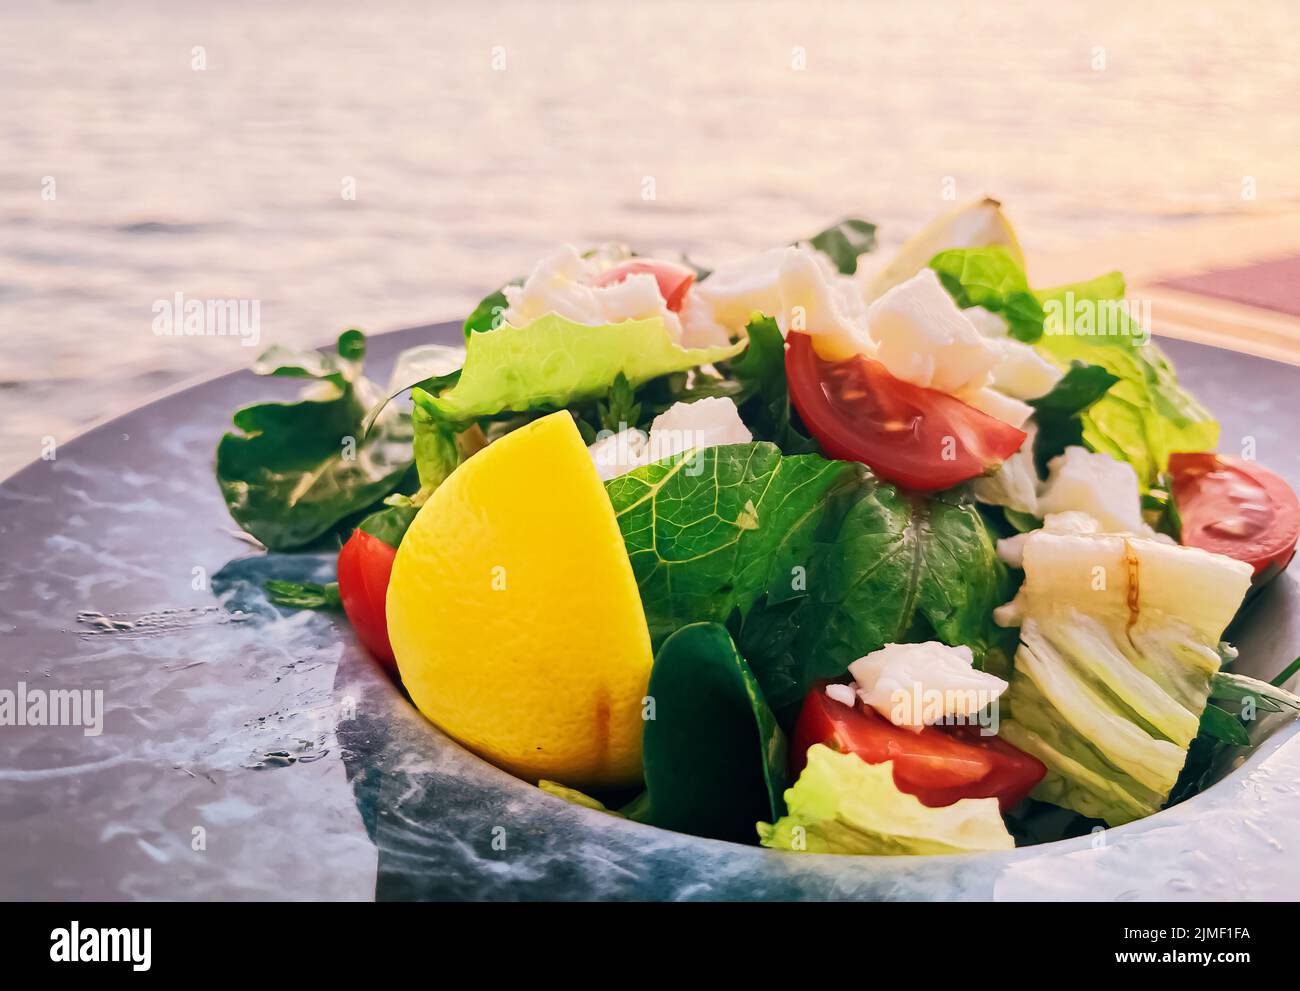 Dieta sana, cibo e cucina mediterranea concetto. Insalata con formaggio bianco e verdure fresche verdi su piatto in un ristorante Foto Stock